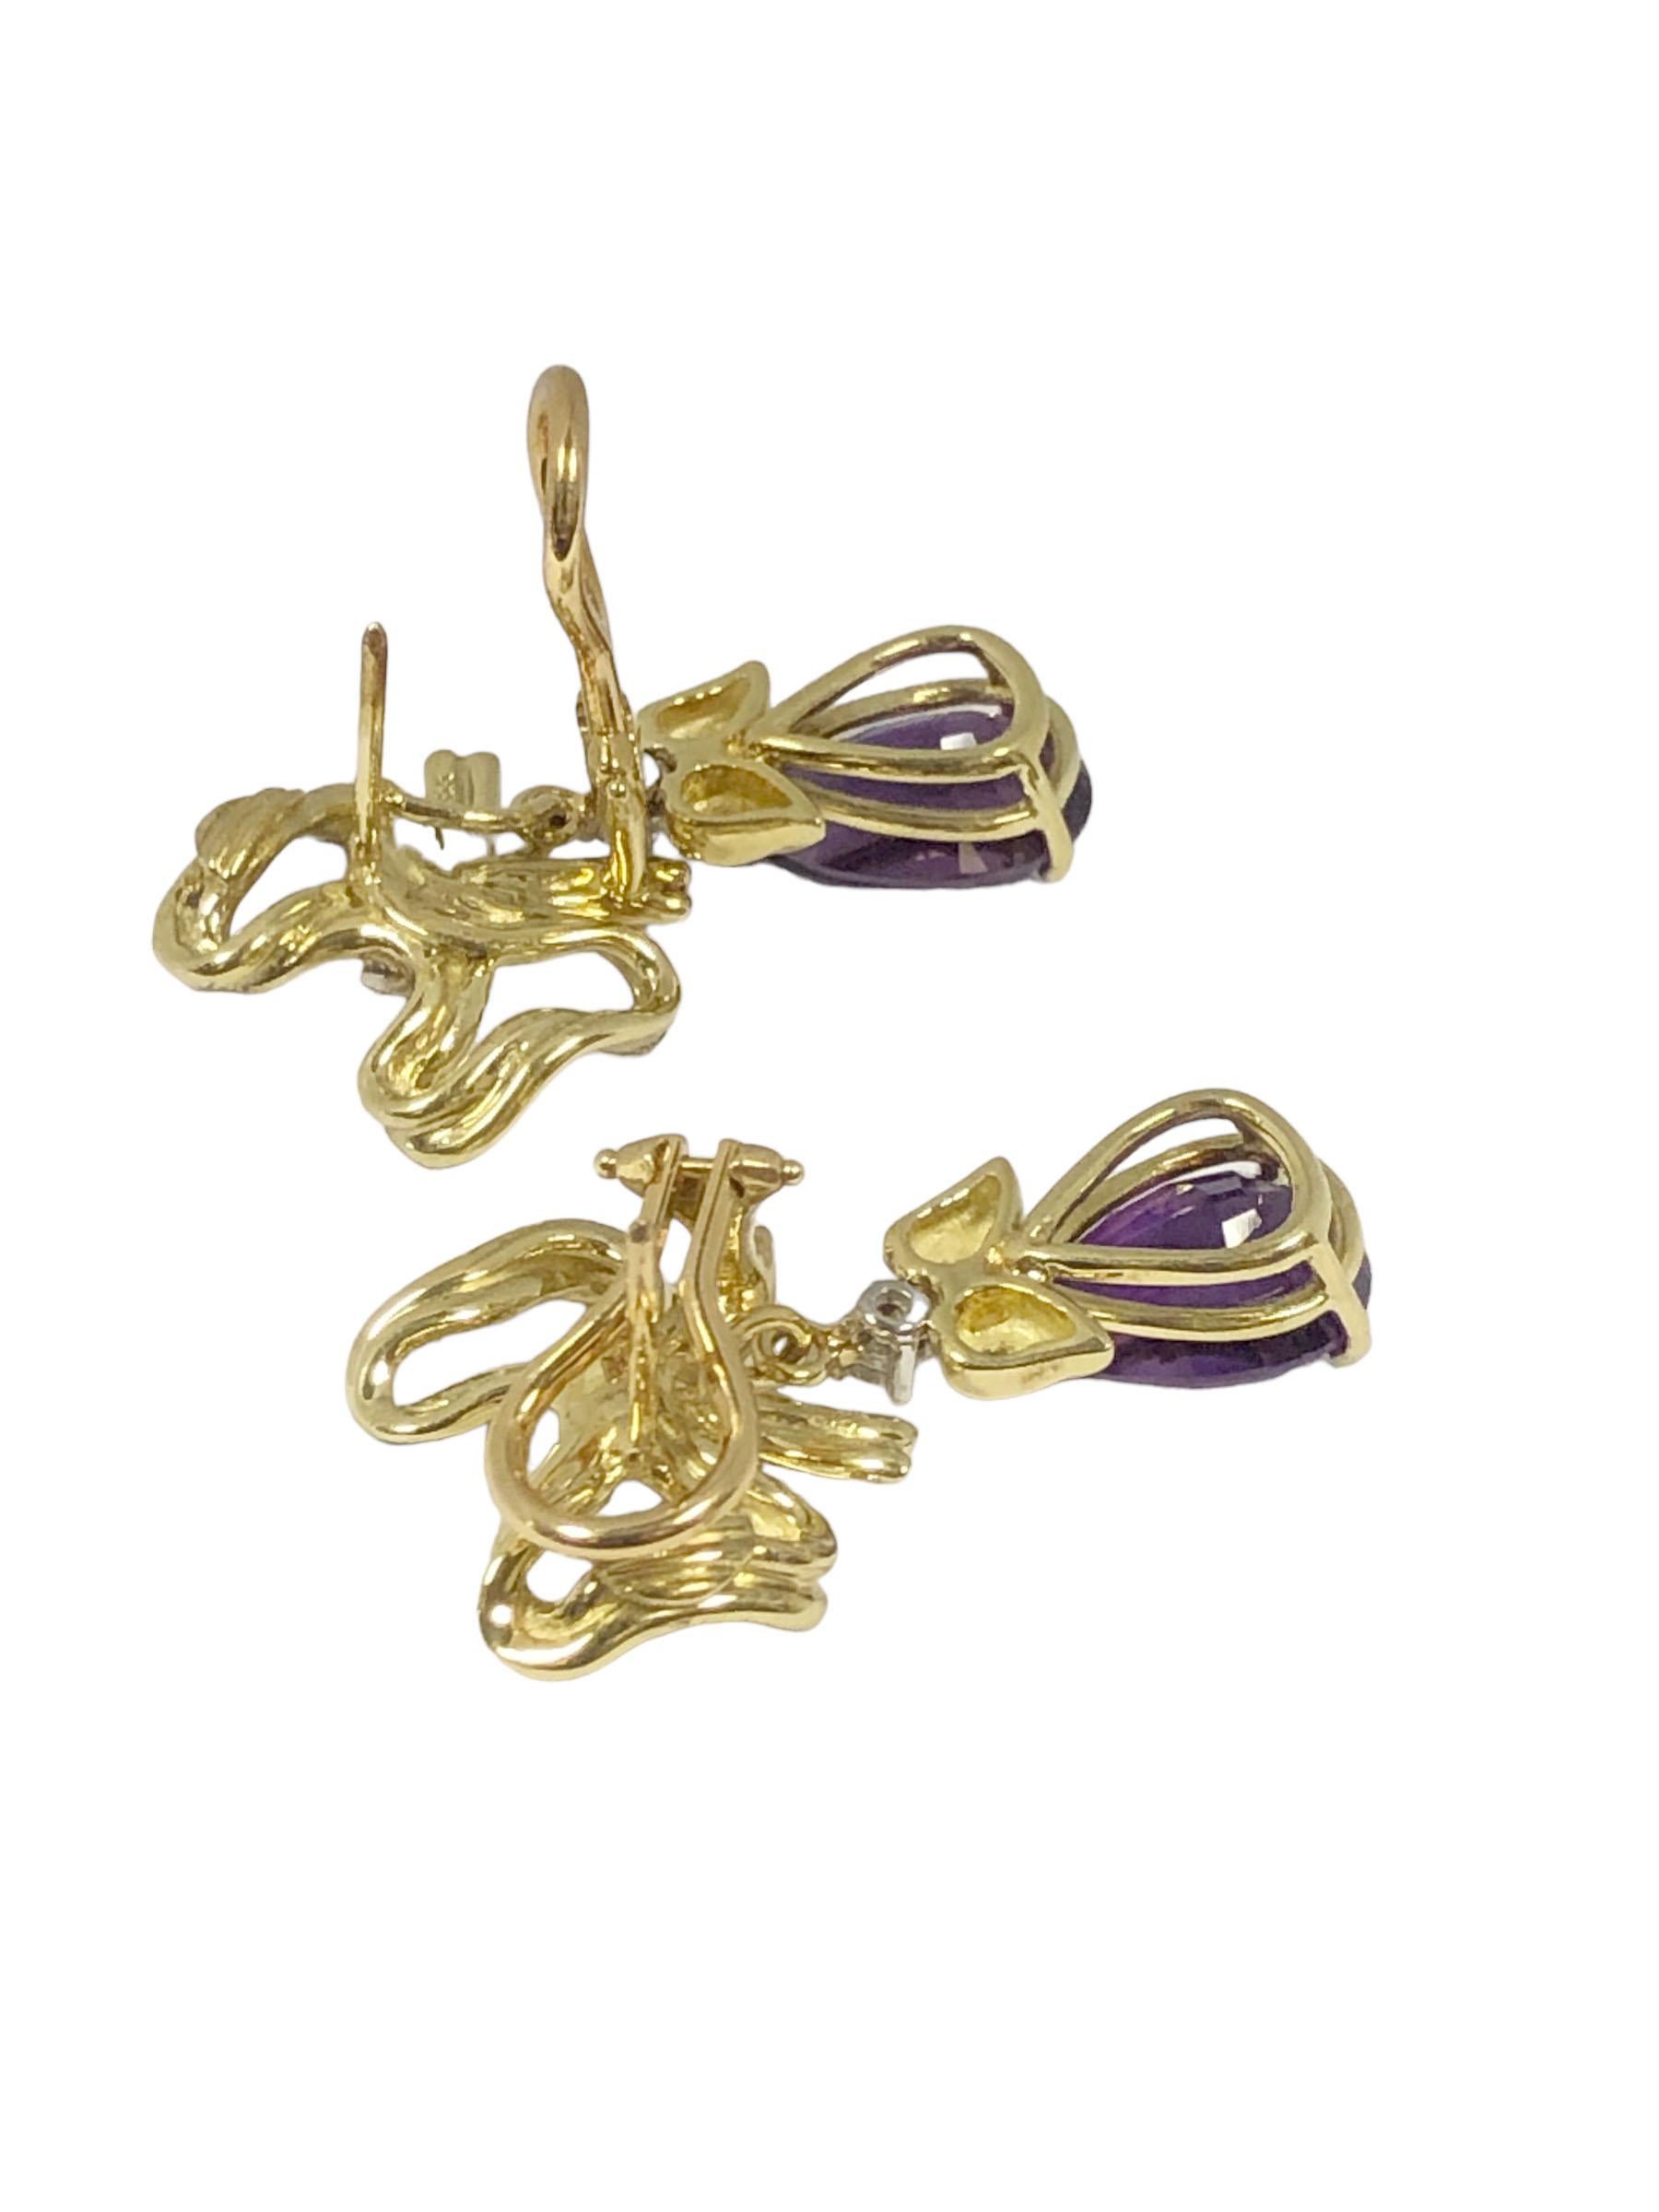 Circa 1990 Tiffany & Company 18k Gelbgold Ohrringe, Messung 1 1/8 Zoll in der Länge und 5/8 Zoll breit, in einem Band und Bogen Form mit dem unteren baumeln Amethyst Abschnitt abnehmbar ist, so dass die Bogenform Tops können allein getragen werden.